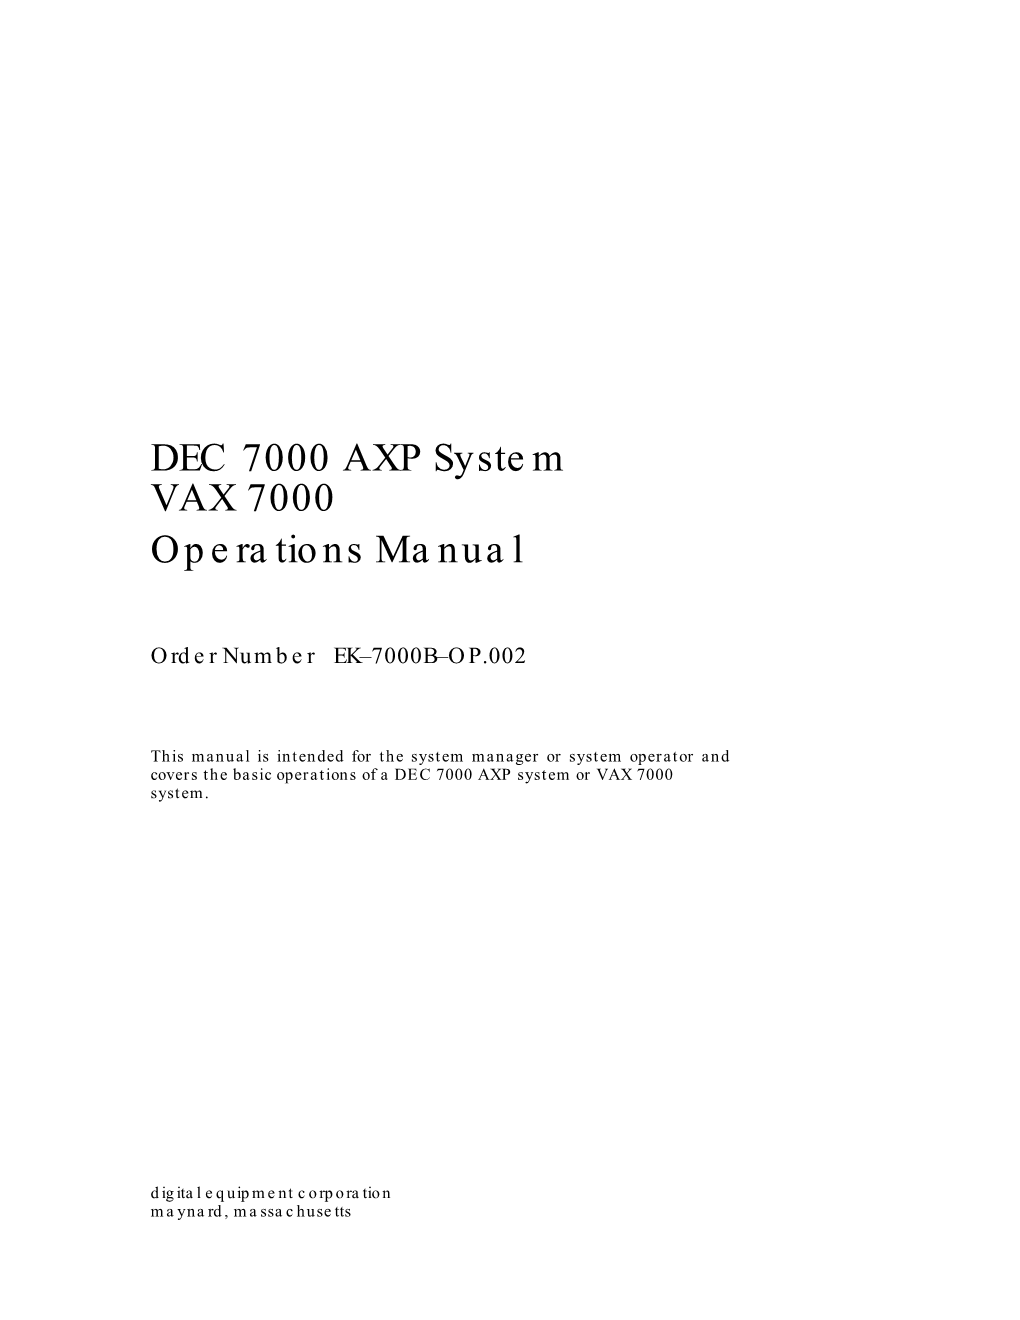 DEC 7000 AXP, VAX 7000 Operations Manual